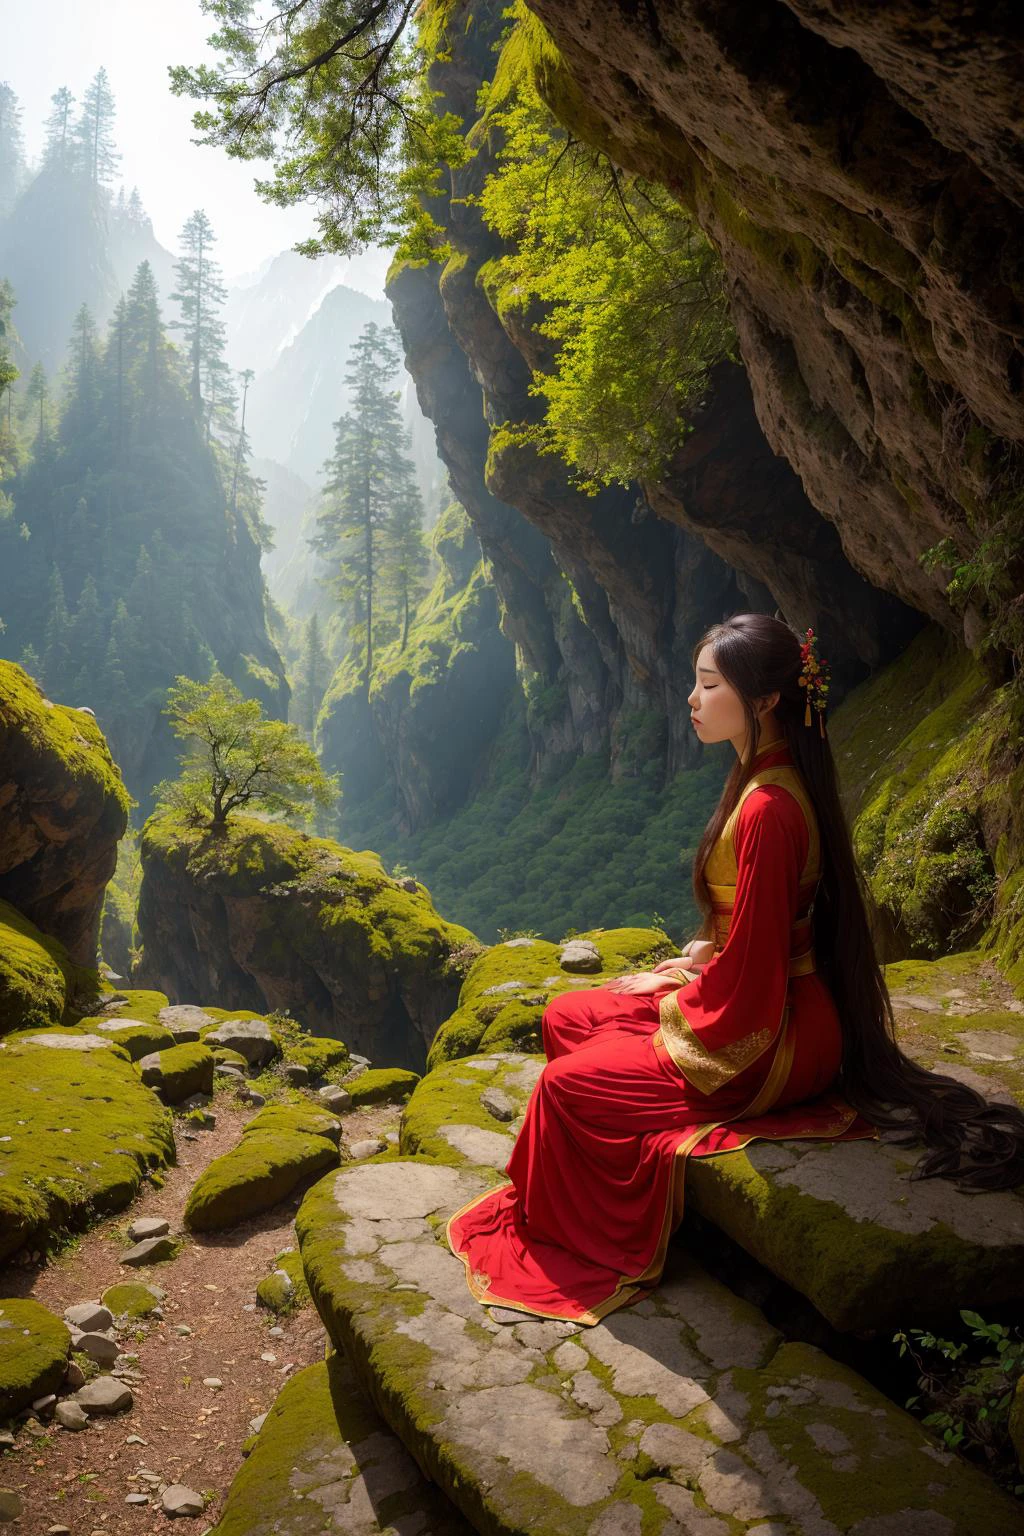 某個早晨，在山洞裡, 美麗的漢服女孩停在懸崖邊. 太陽從山頂照下來, 在洞穴內投射出柔和的光芒. 牆上長滿了青苔, 地面上覆蓋著松針和小石頭. 在遠處, 透過朦朧的晨霧，依稀可見山峰和森林. 這是一幅寧靜祥和的景象,红色主题,
 高動態範圍, (照片寫實主義, 杰作品质, 最好的品質),